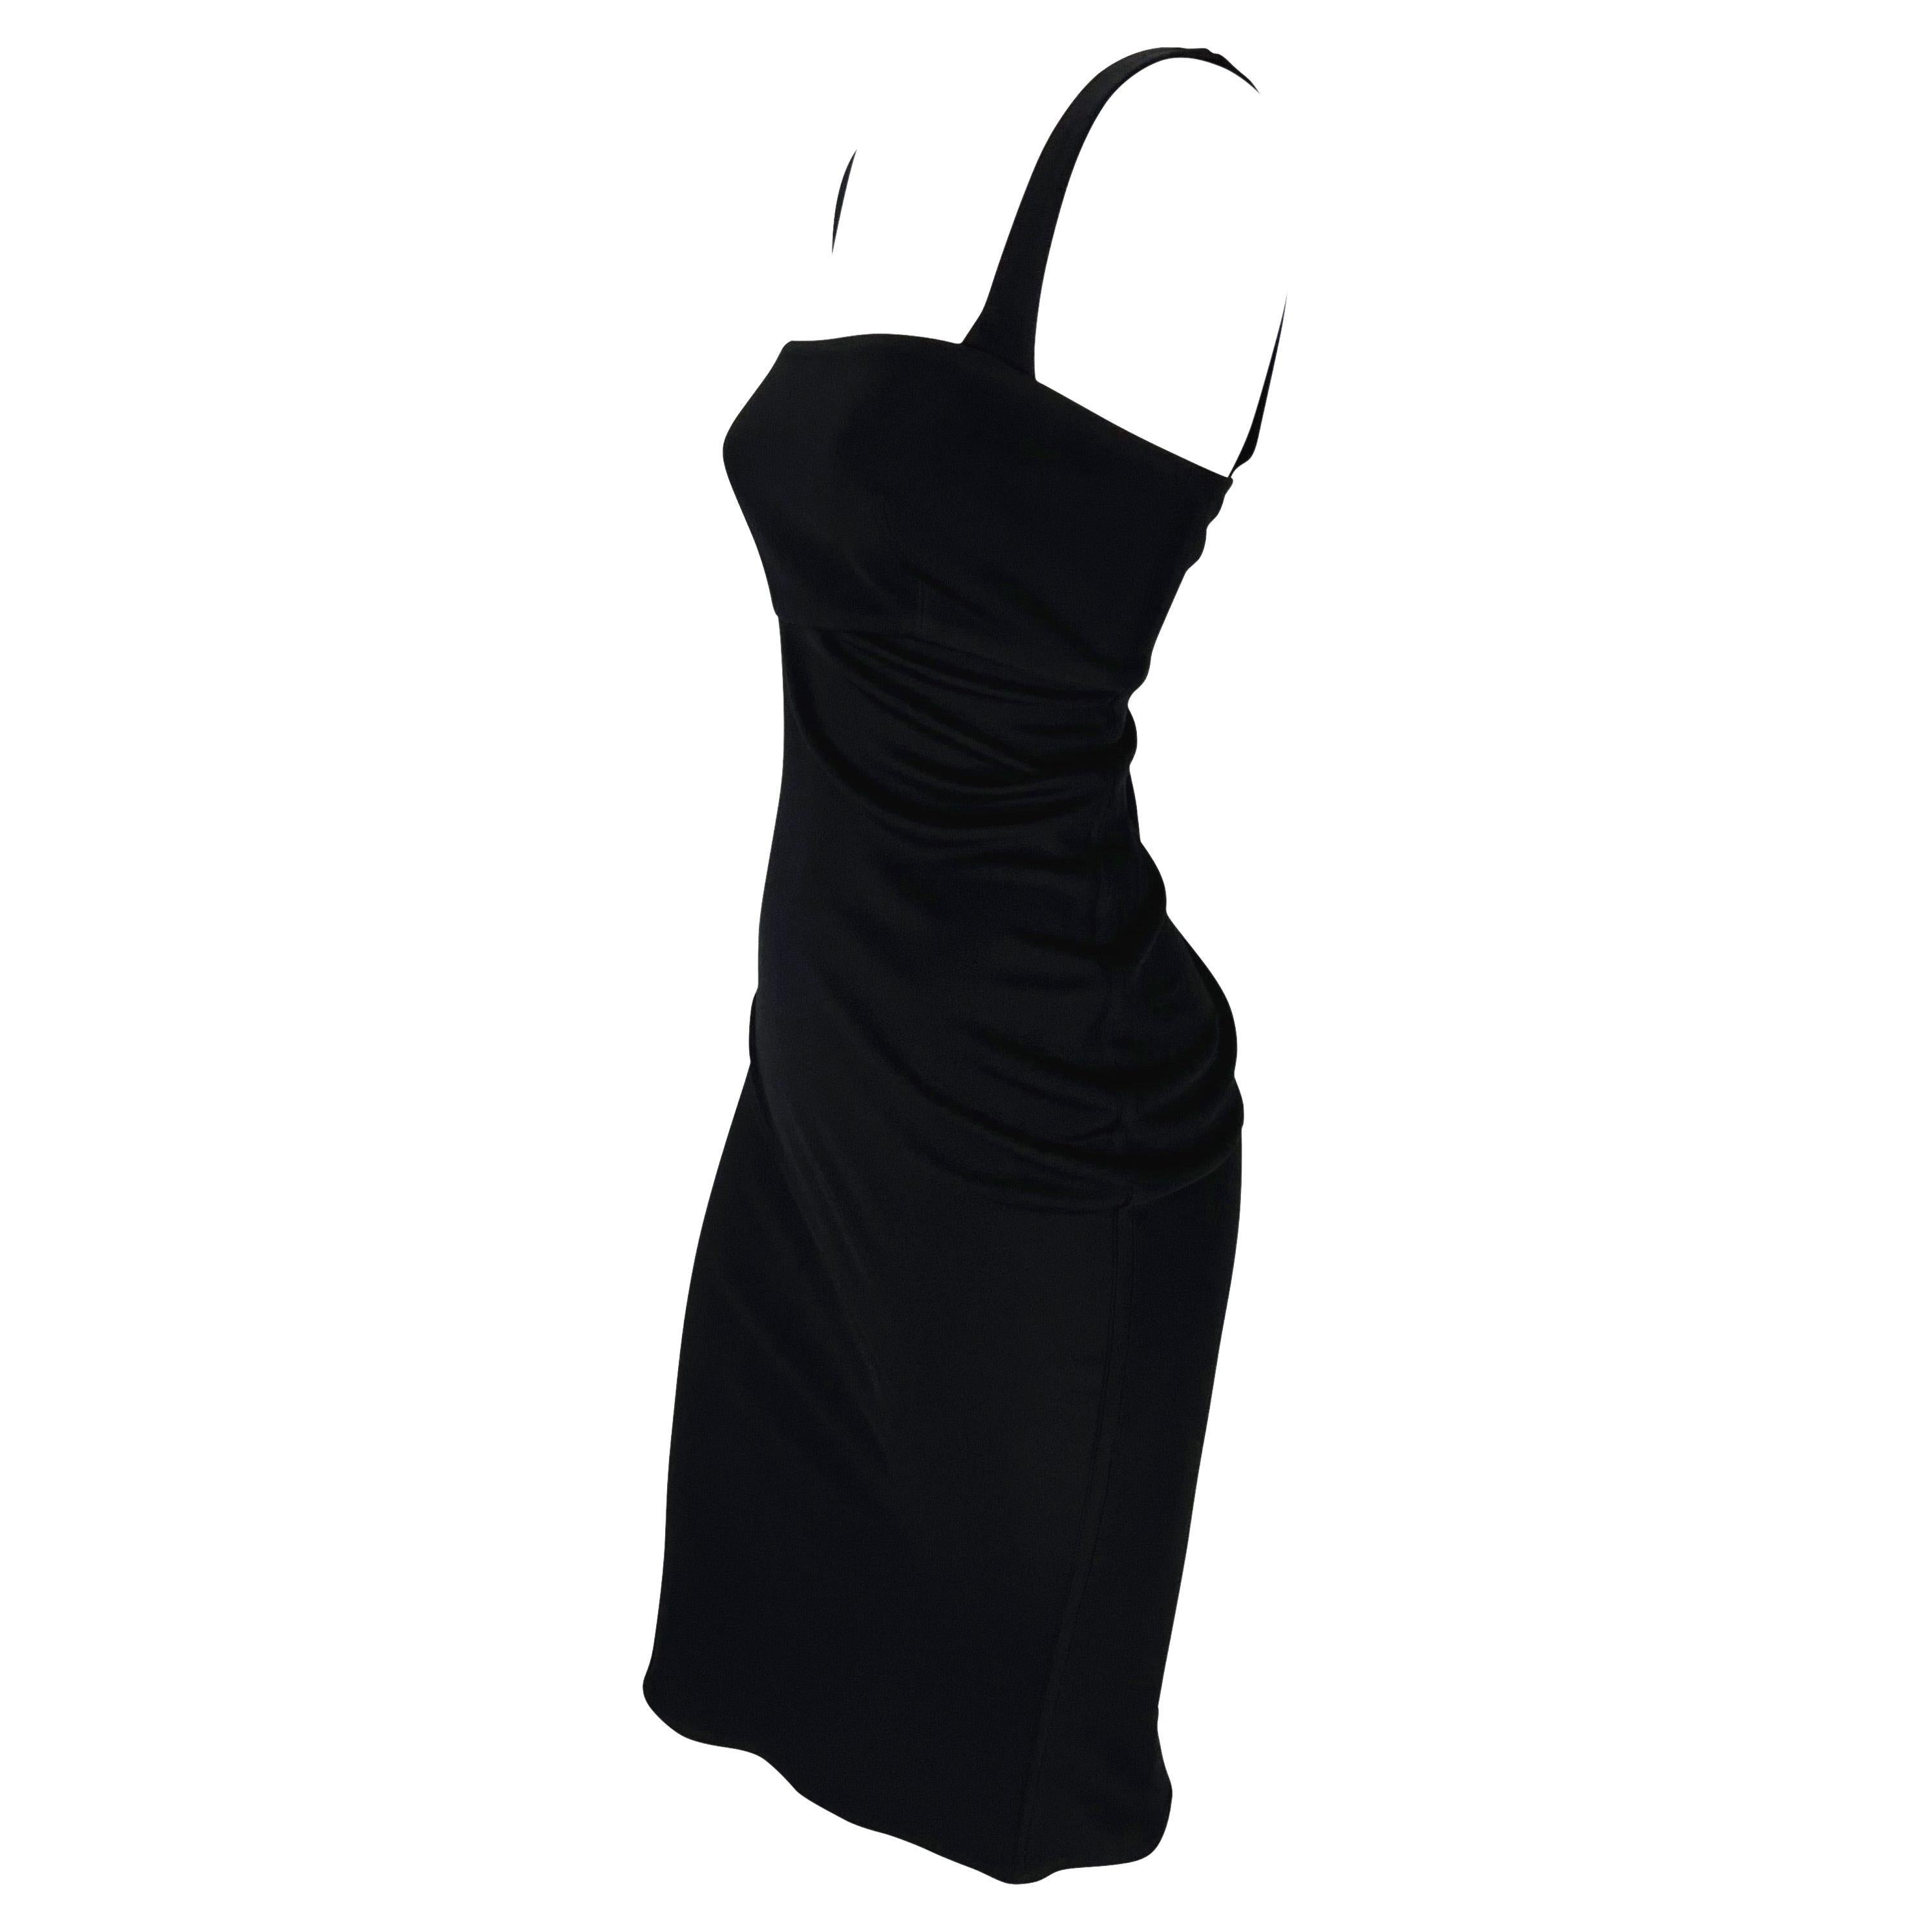 Présentation d'une sensuelle robe de cocktail noire Gianni Versace, créée par Gianni Versace. Issue de la collection automne/hiver 1997, cette petite robe noire présente de larges bretelles et une encolure carrée. La robe est complétée par une coupe